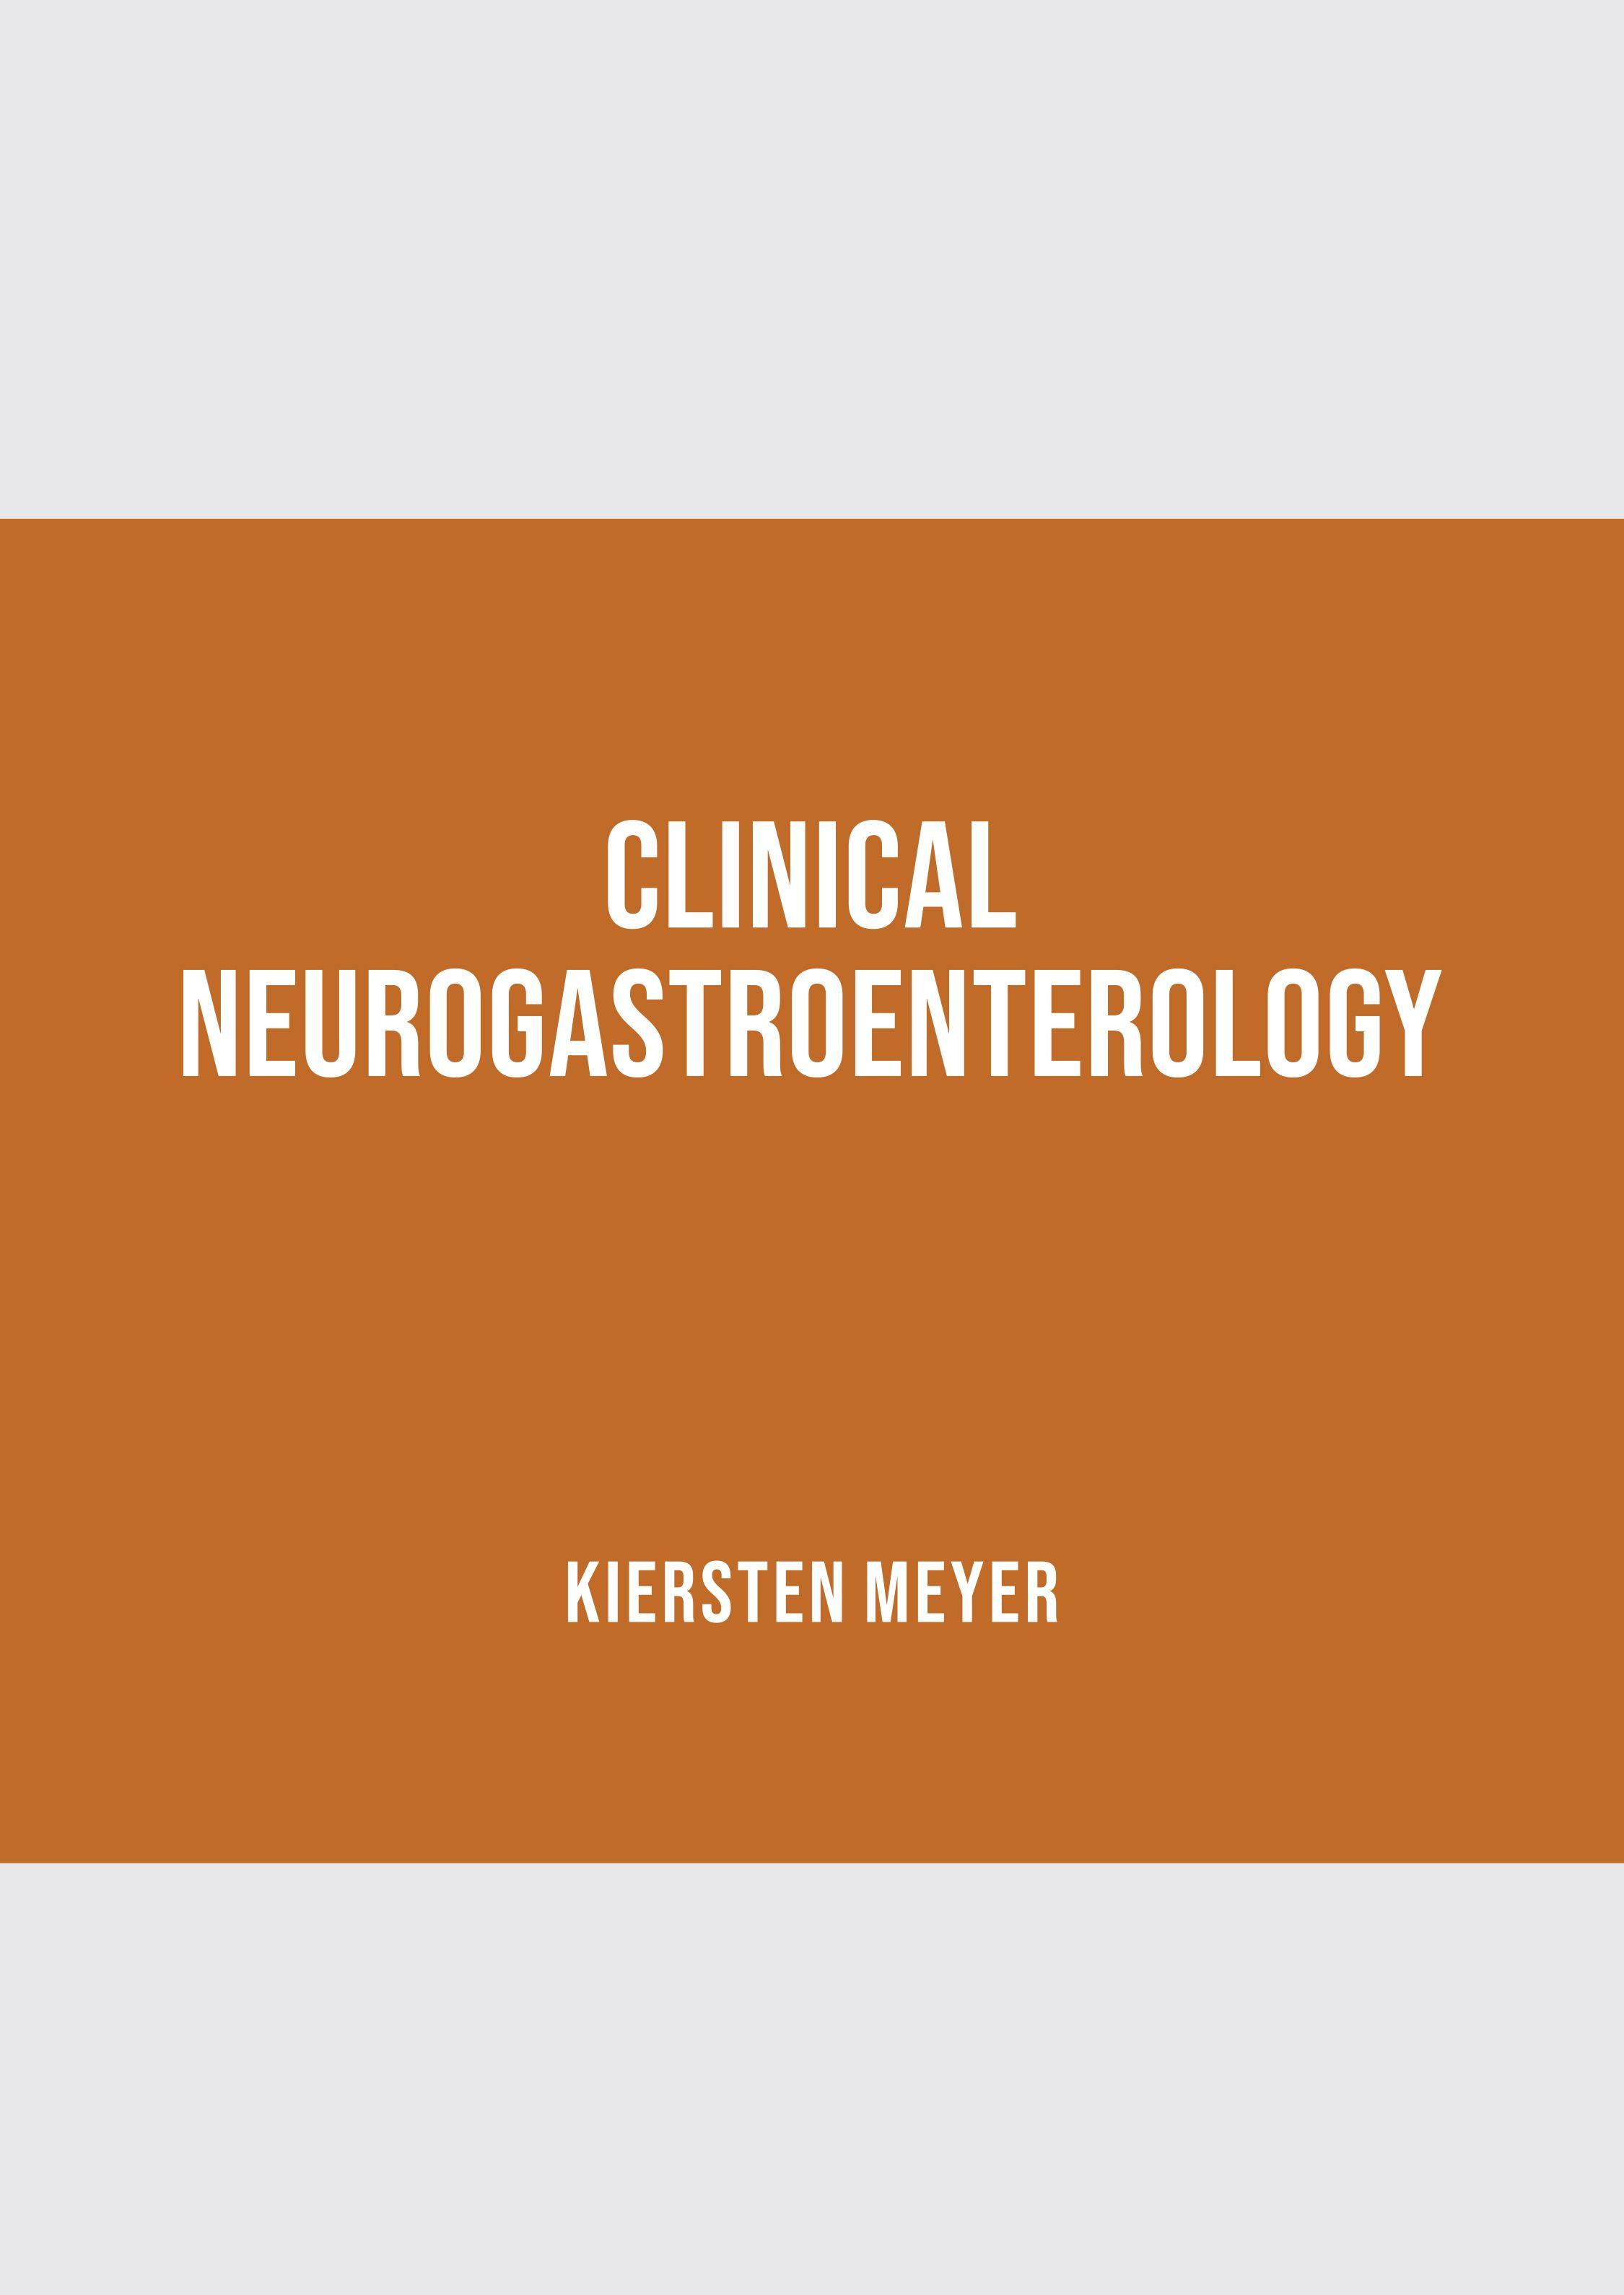 CLINICAL NEUROGASTROENTEROLOGY